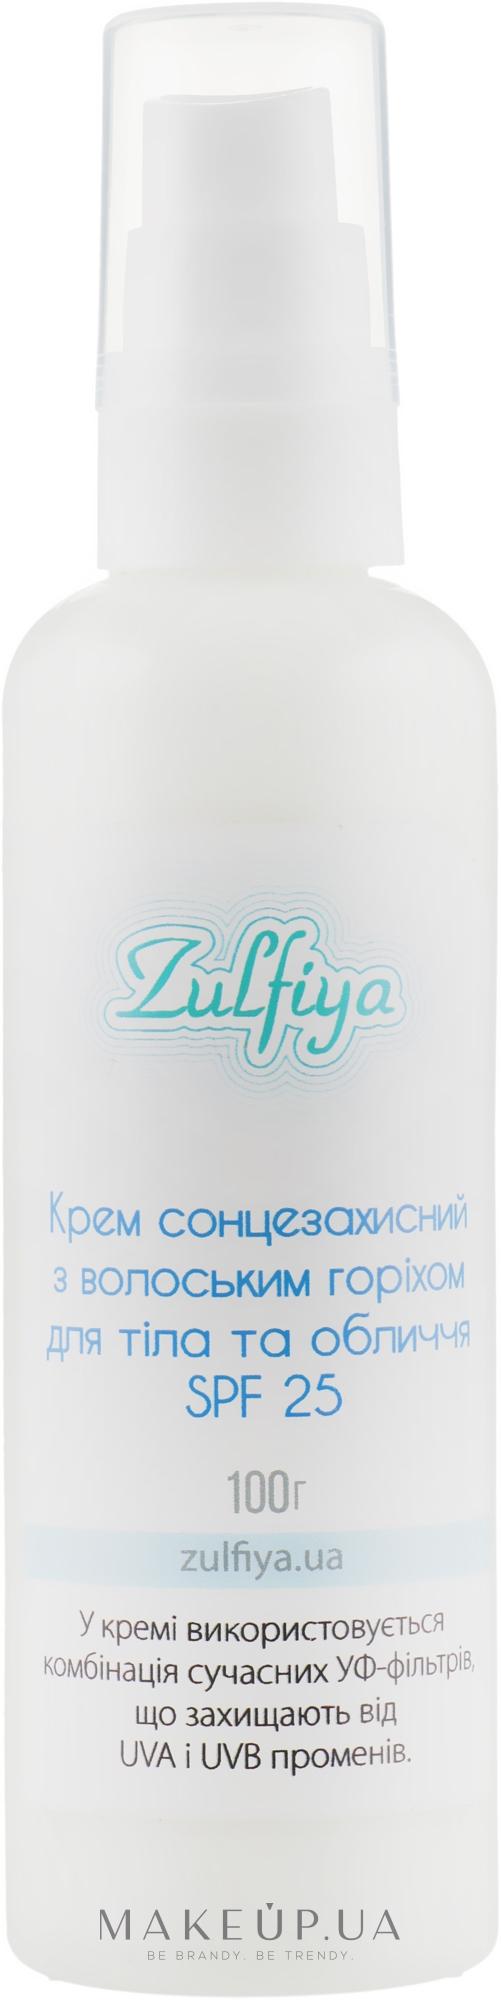 Крем солнцезащитный с грецким орехом для тела и лица SPF 25 - Zulfiya  — фото 100g